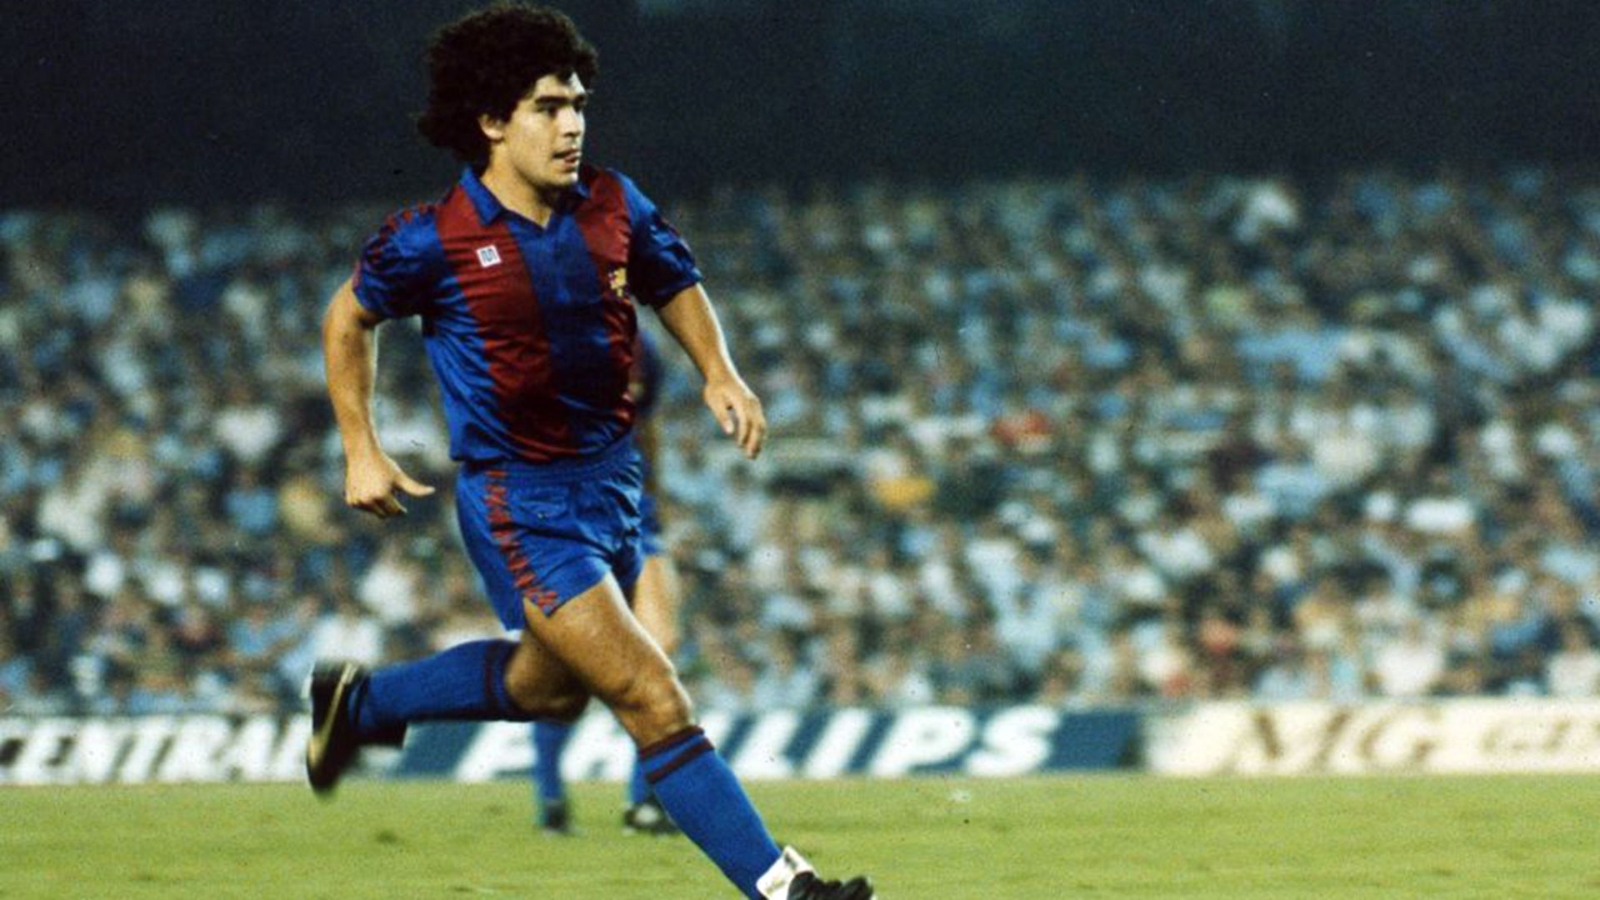 Golazos y lesiones, así fue el paso de Maradona en Barcelona